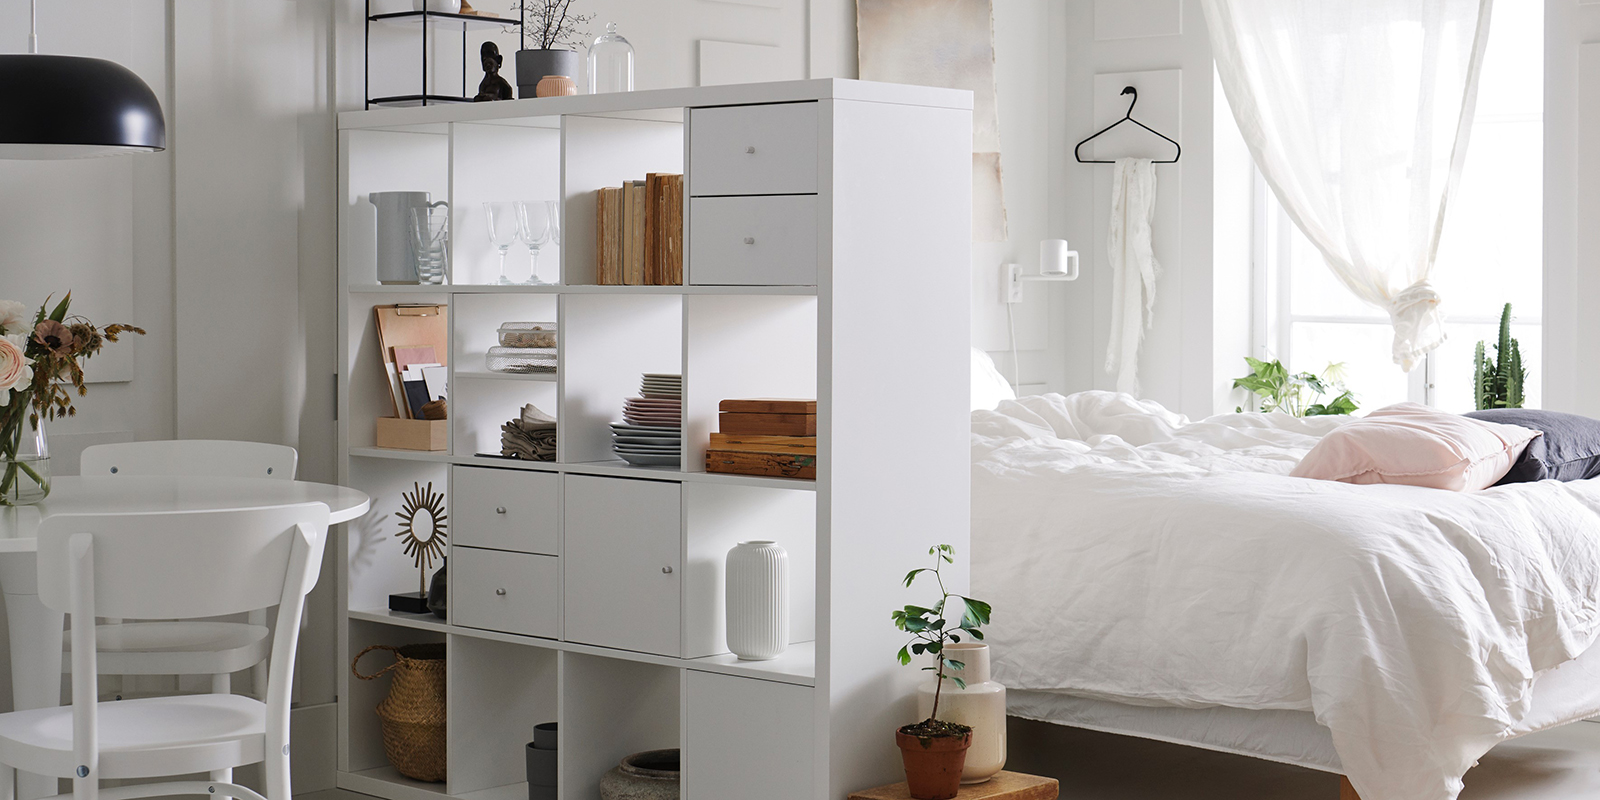 Ett rum med en säng bäddat i vita textilier och en vit bokhylla står.